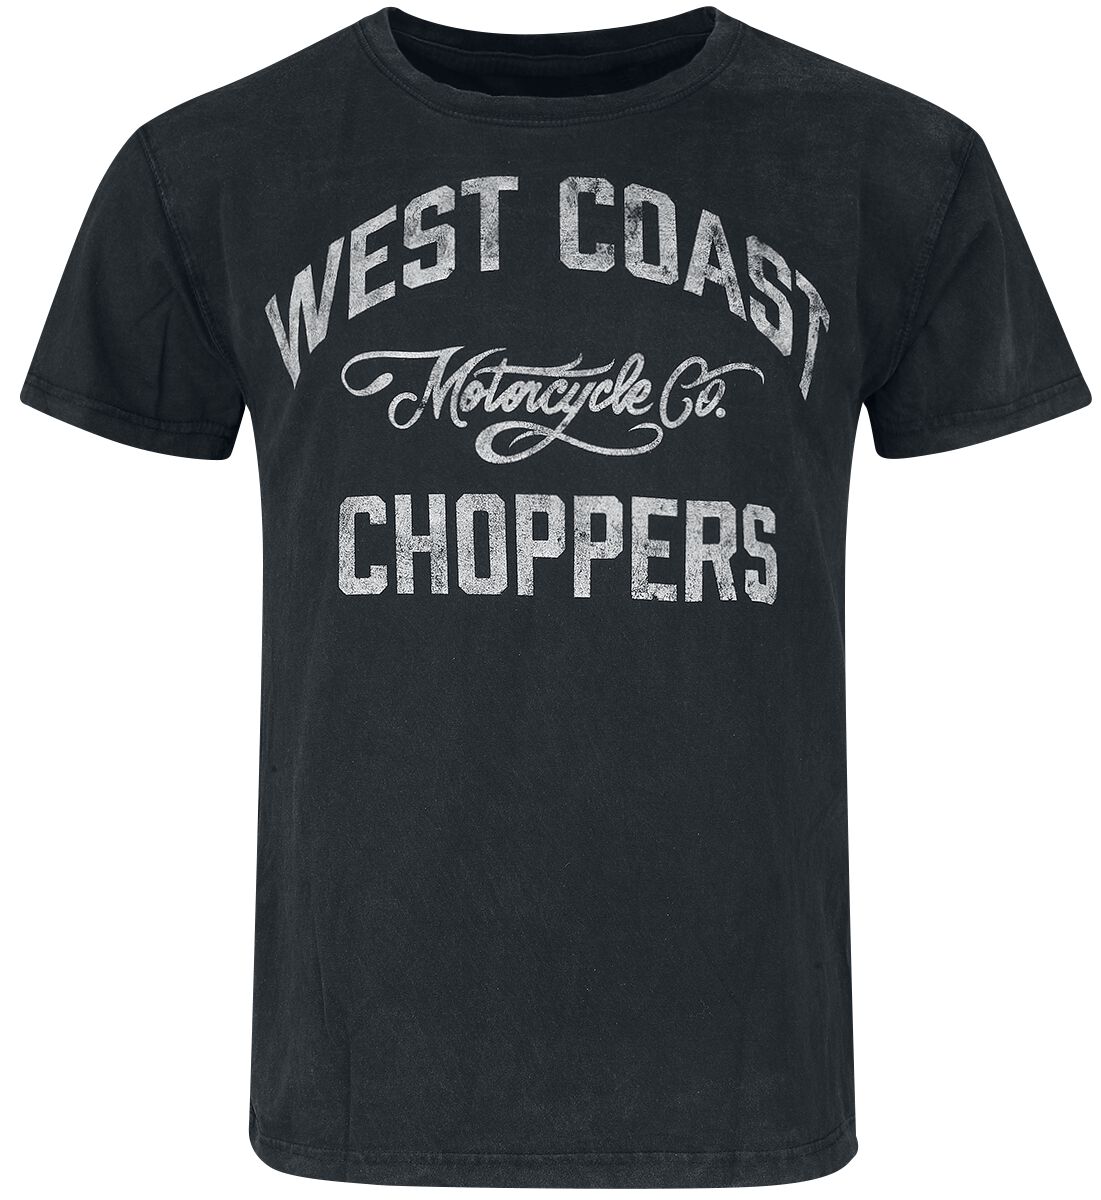 West Coast Choppers T-Shirt - Motorcycle Co. - S bis 3XL - für Männer - Größe 3XL - schwarz